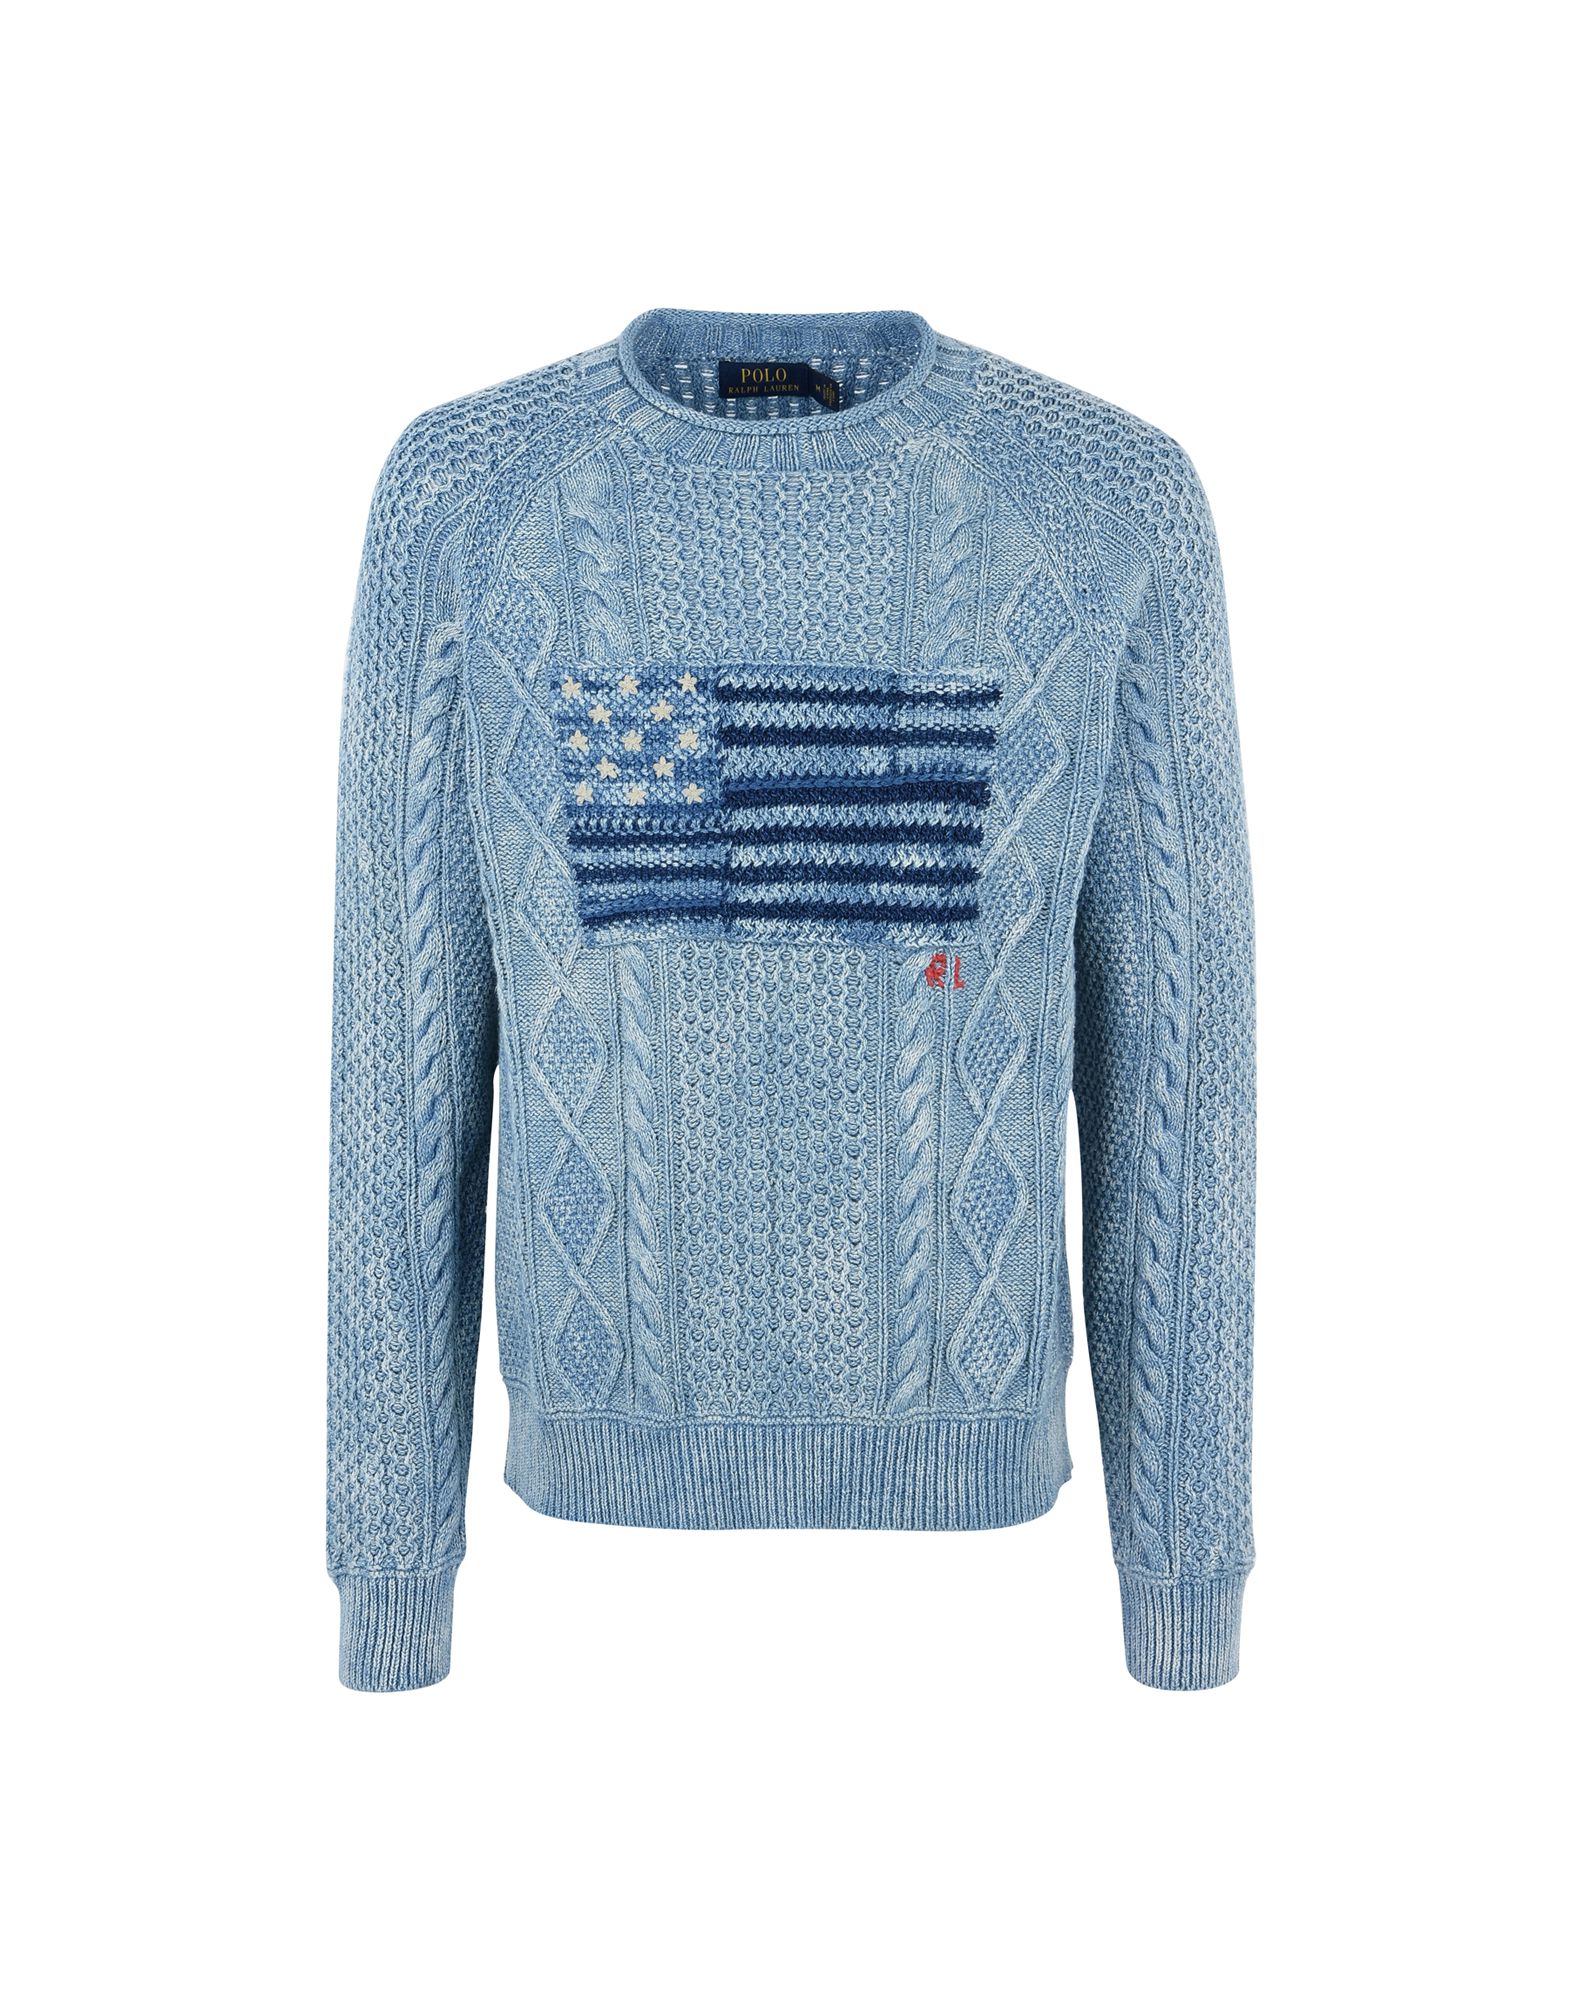 《送料無料》POLO RALPH LAUREN メンズ プルオーバー ブルーグレー M コットン 100% The Iconic American Flag Sweater